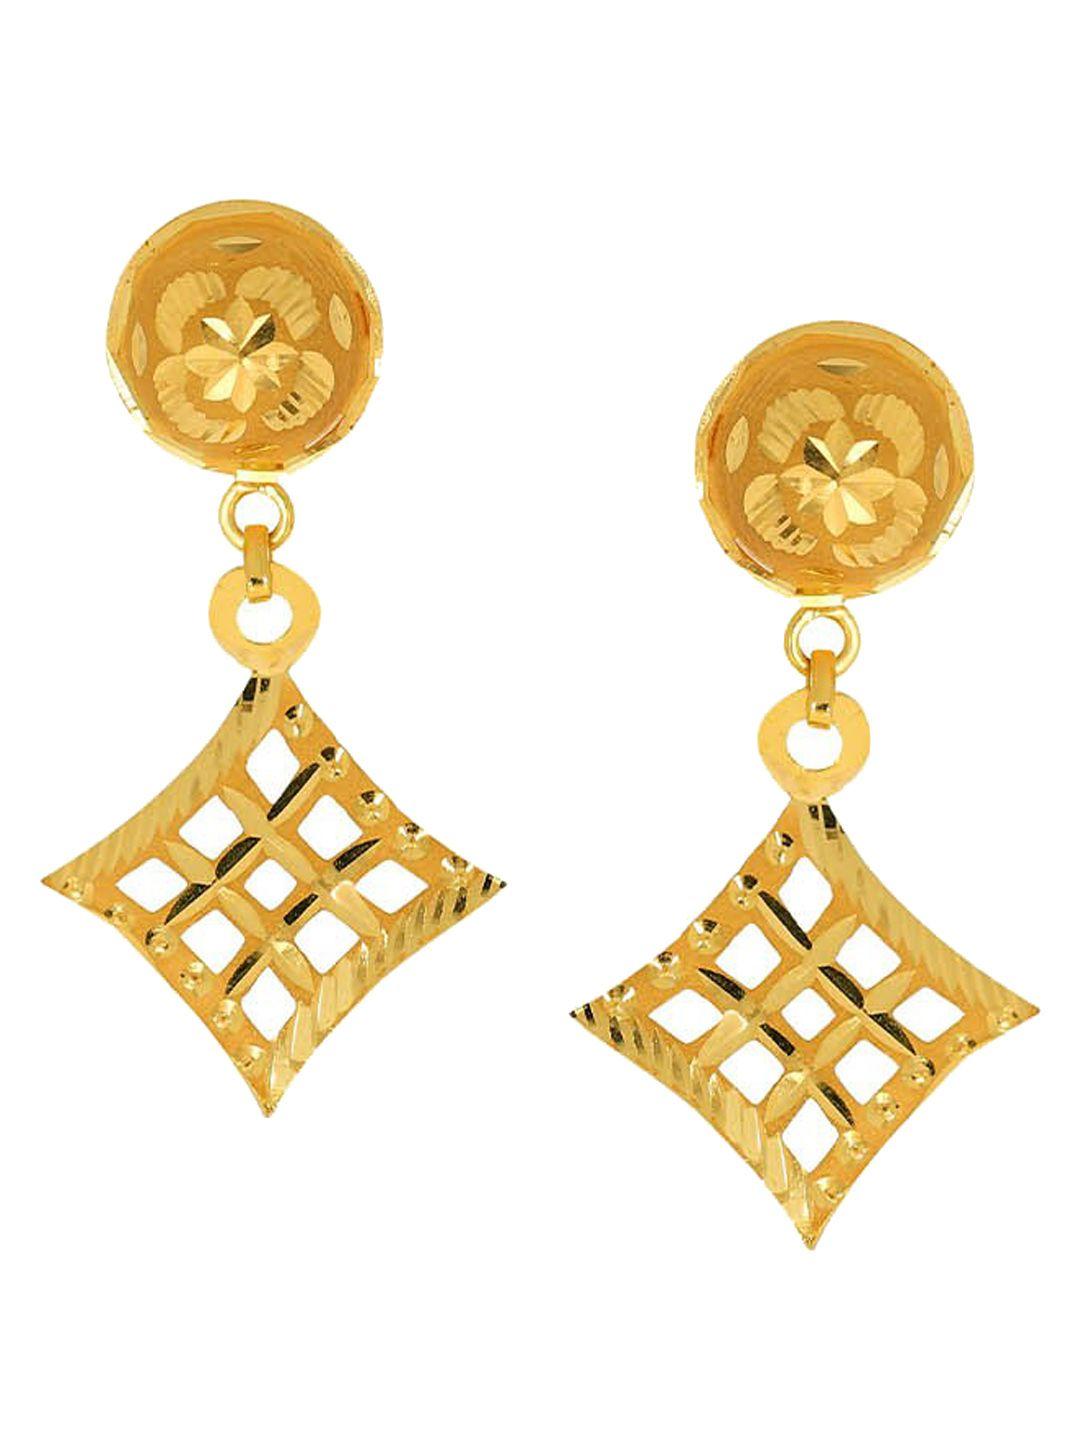 senco rhombic lattice 22kt gold drop earrings-1.2gm